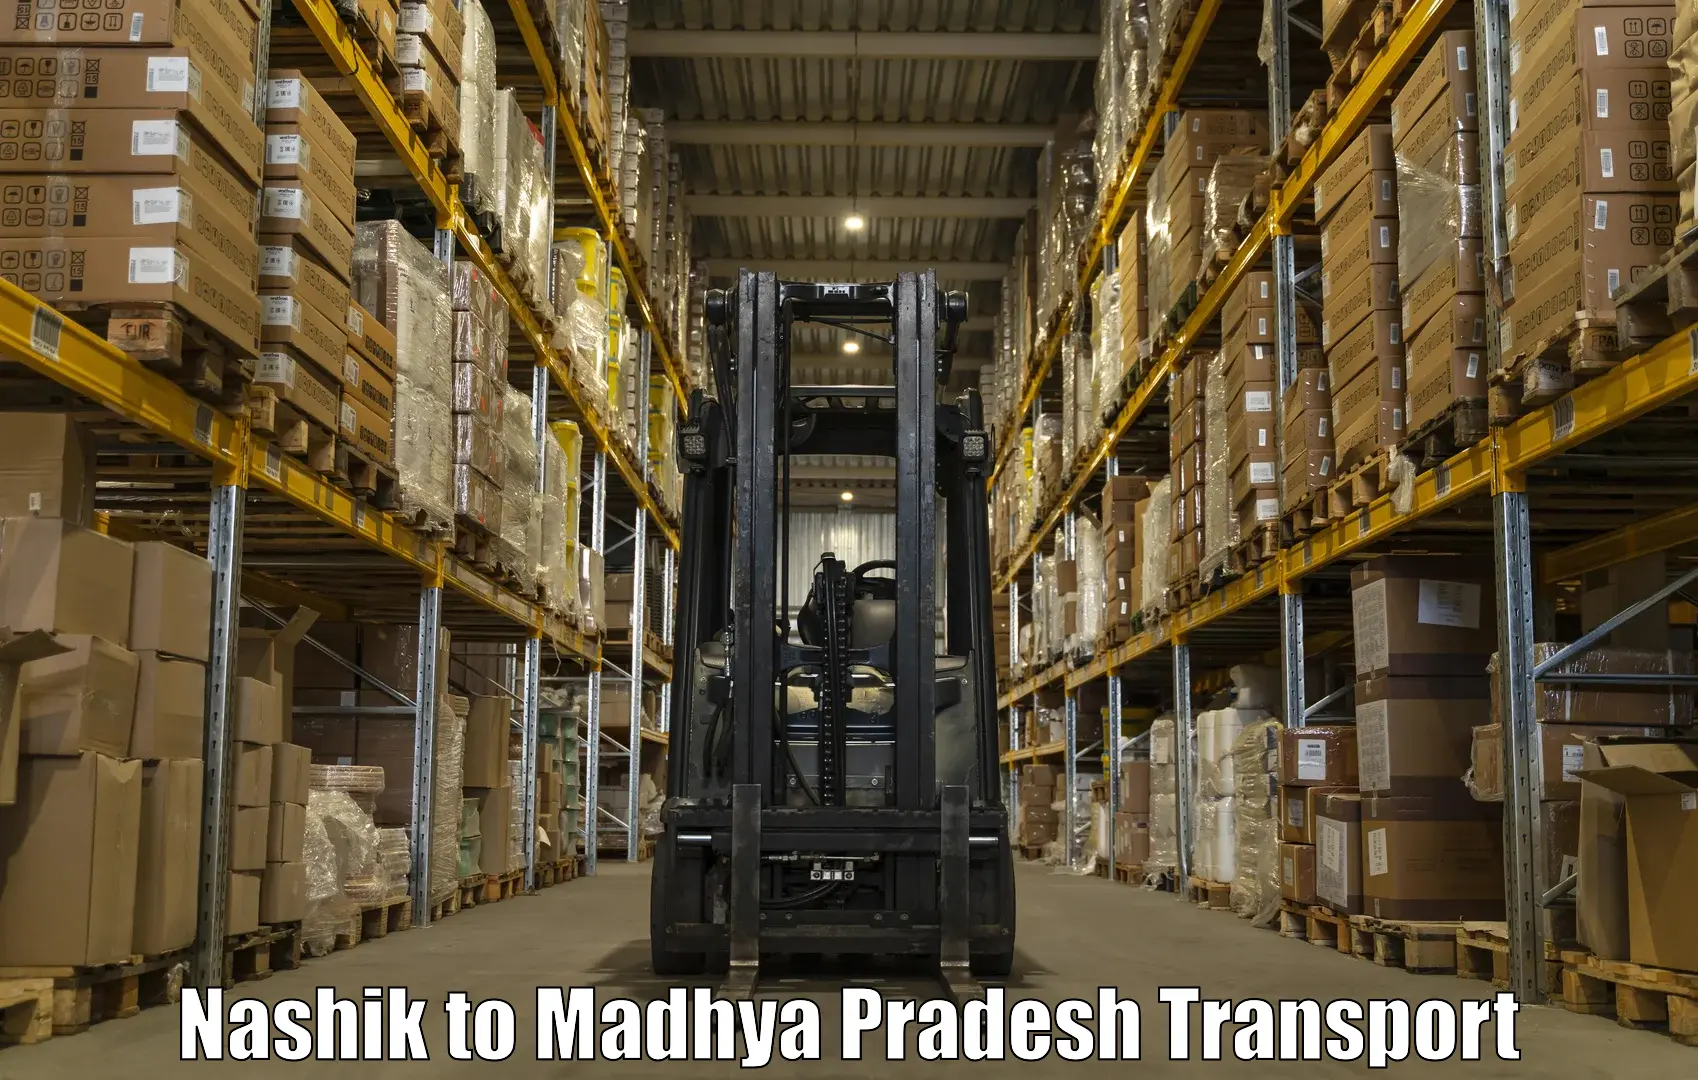 Nationwide transport services Nashik to Pandhurna